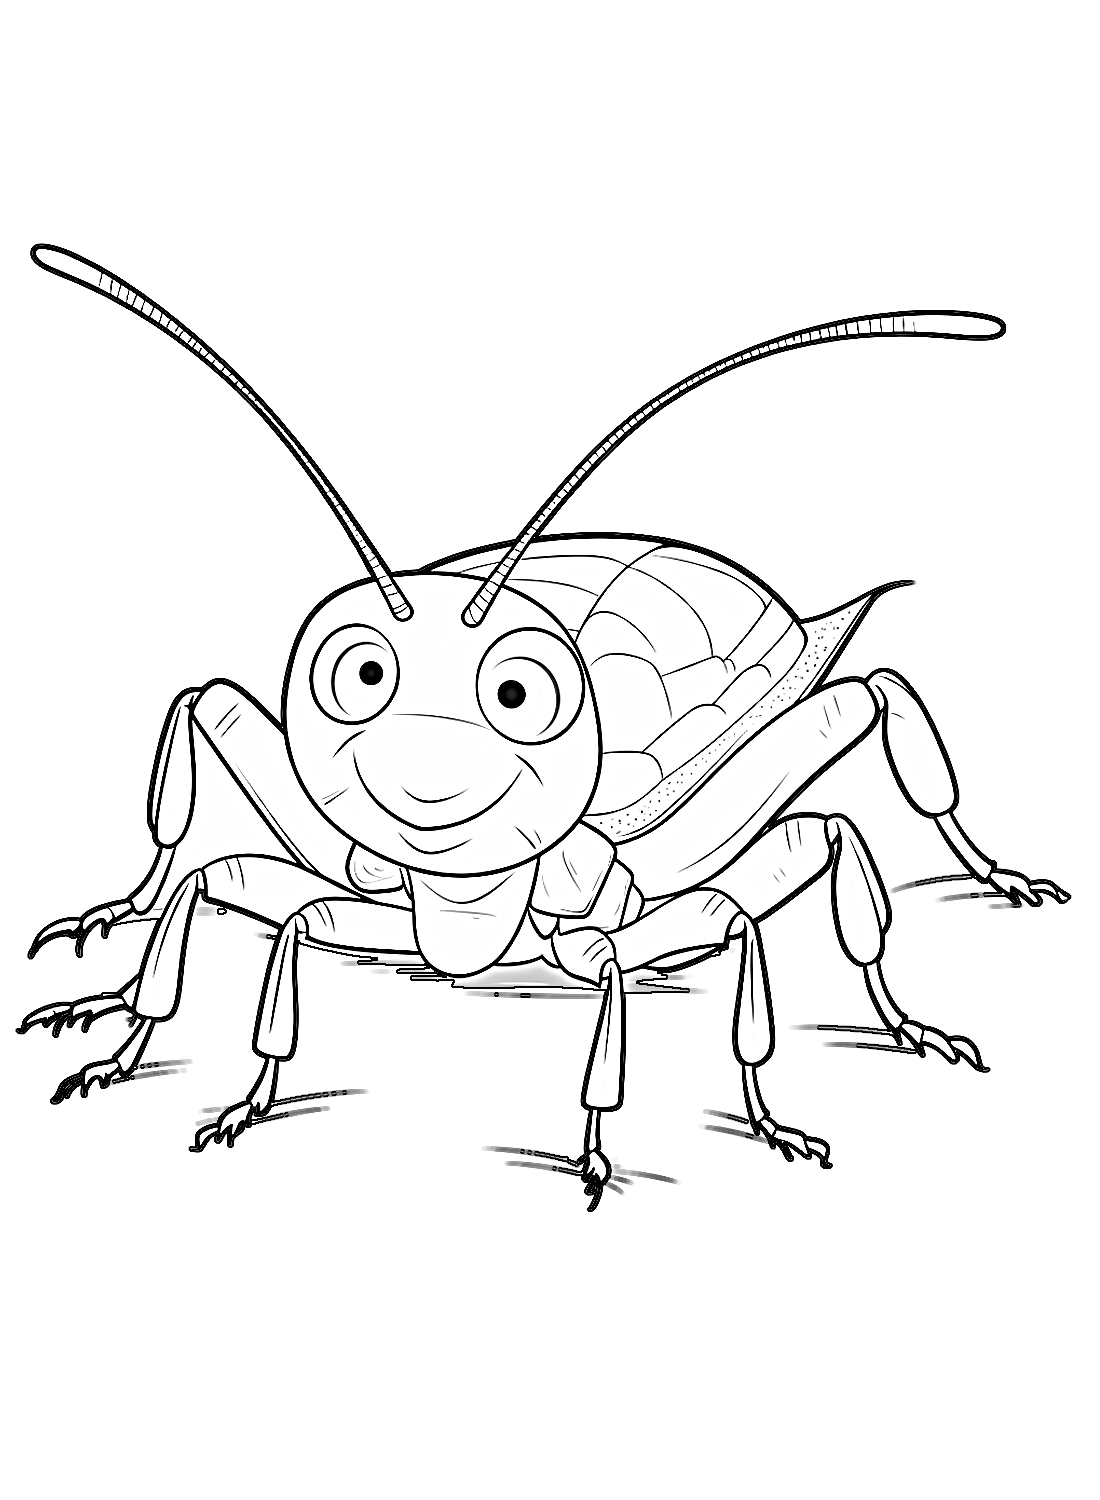 Een schattige kakkerlak van Cockroach